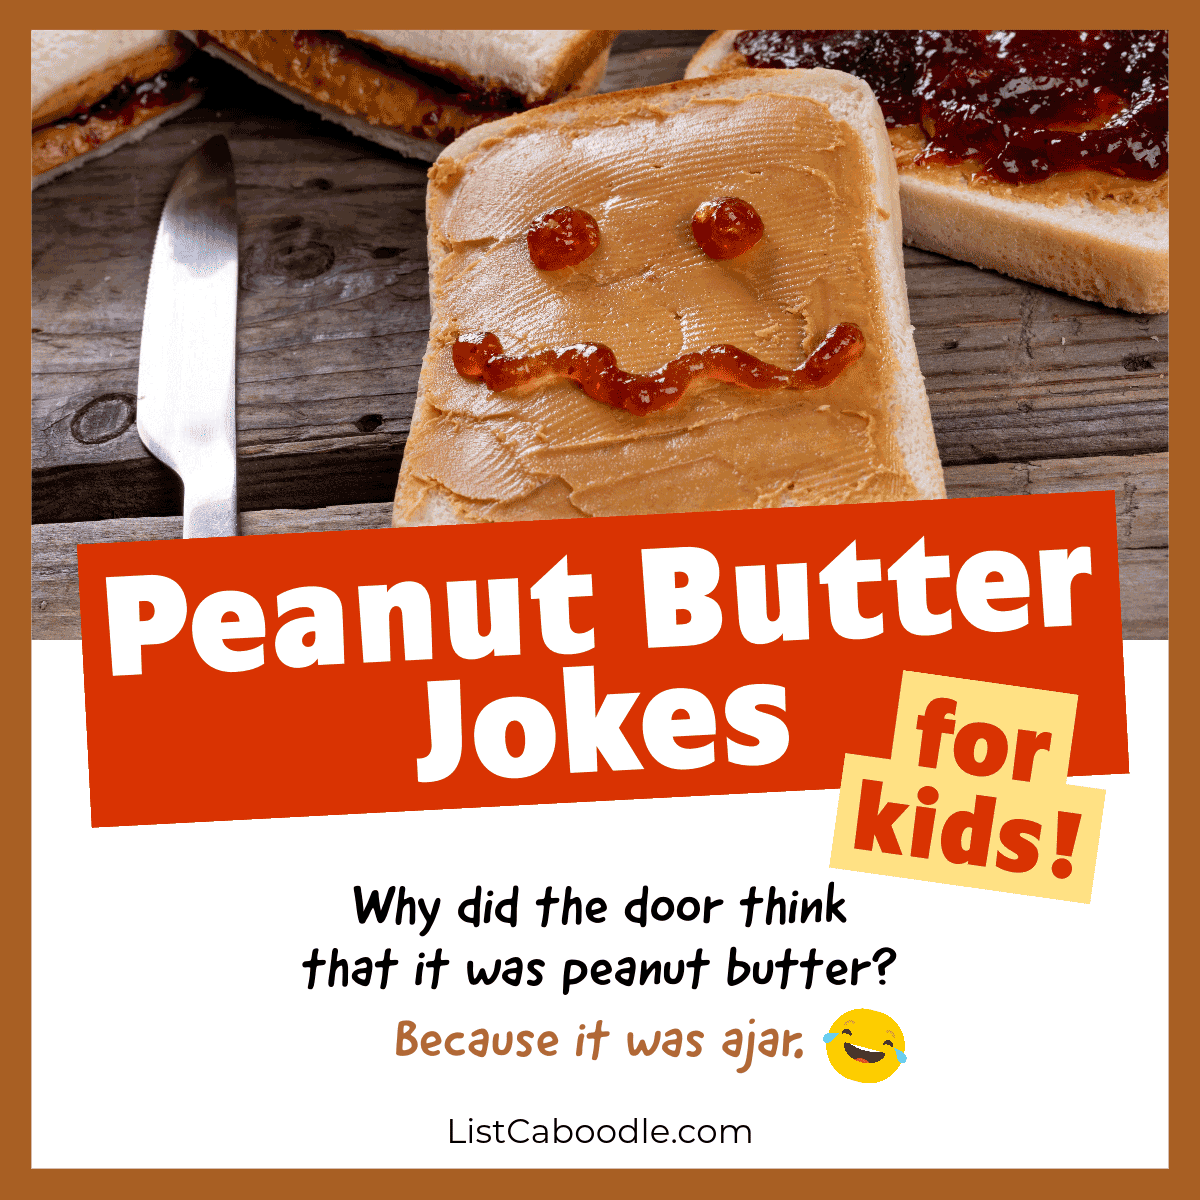 Peanut butter jokes for kids